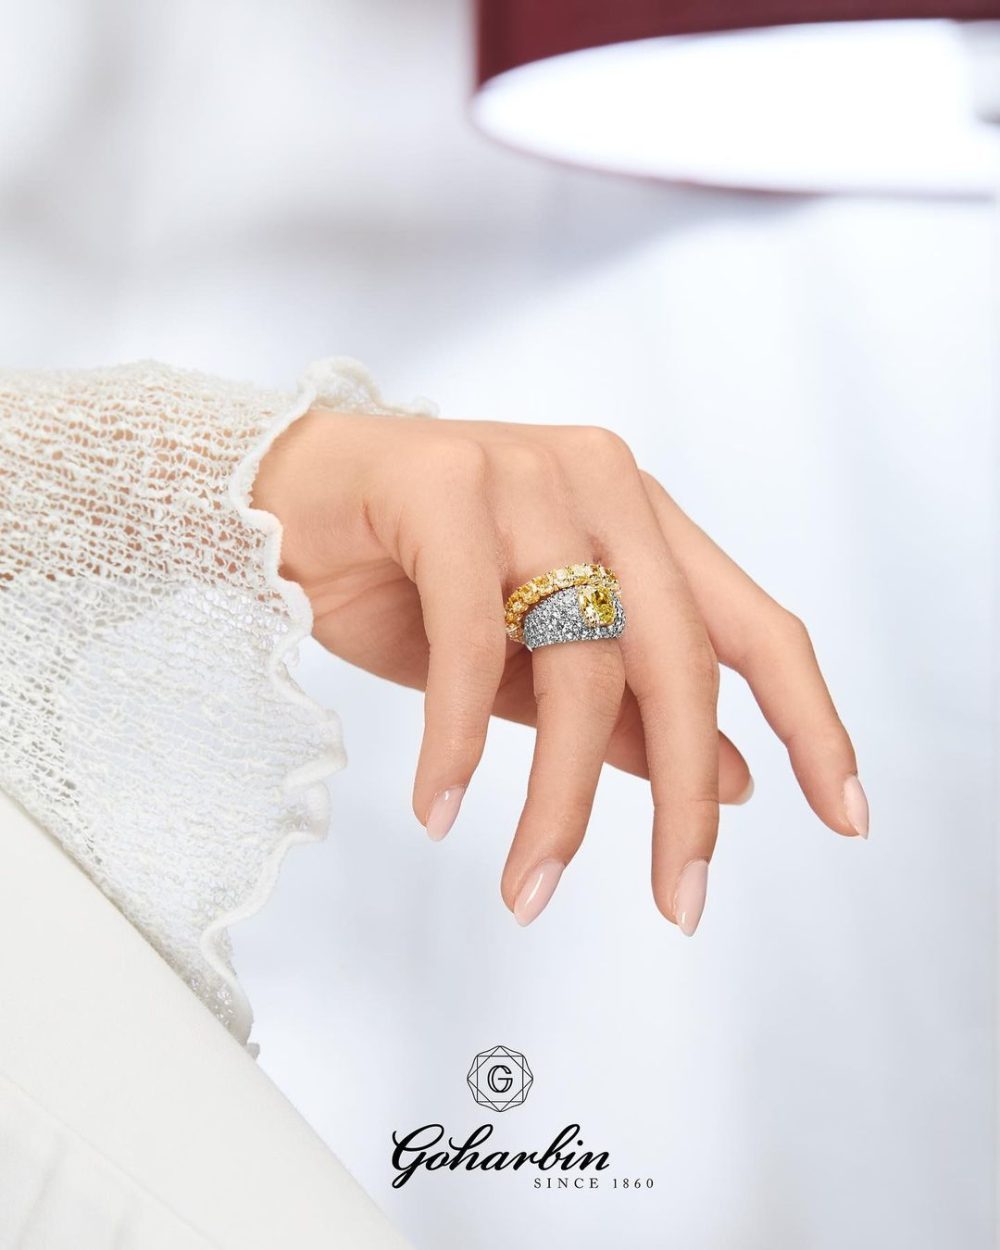 Goharbin Engagement Rings